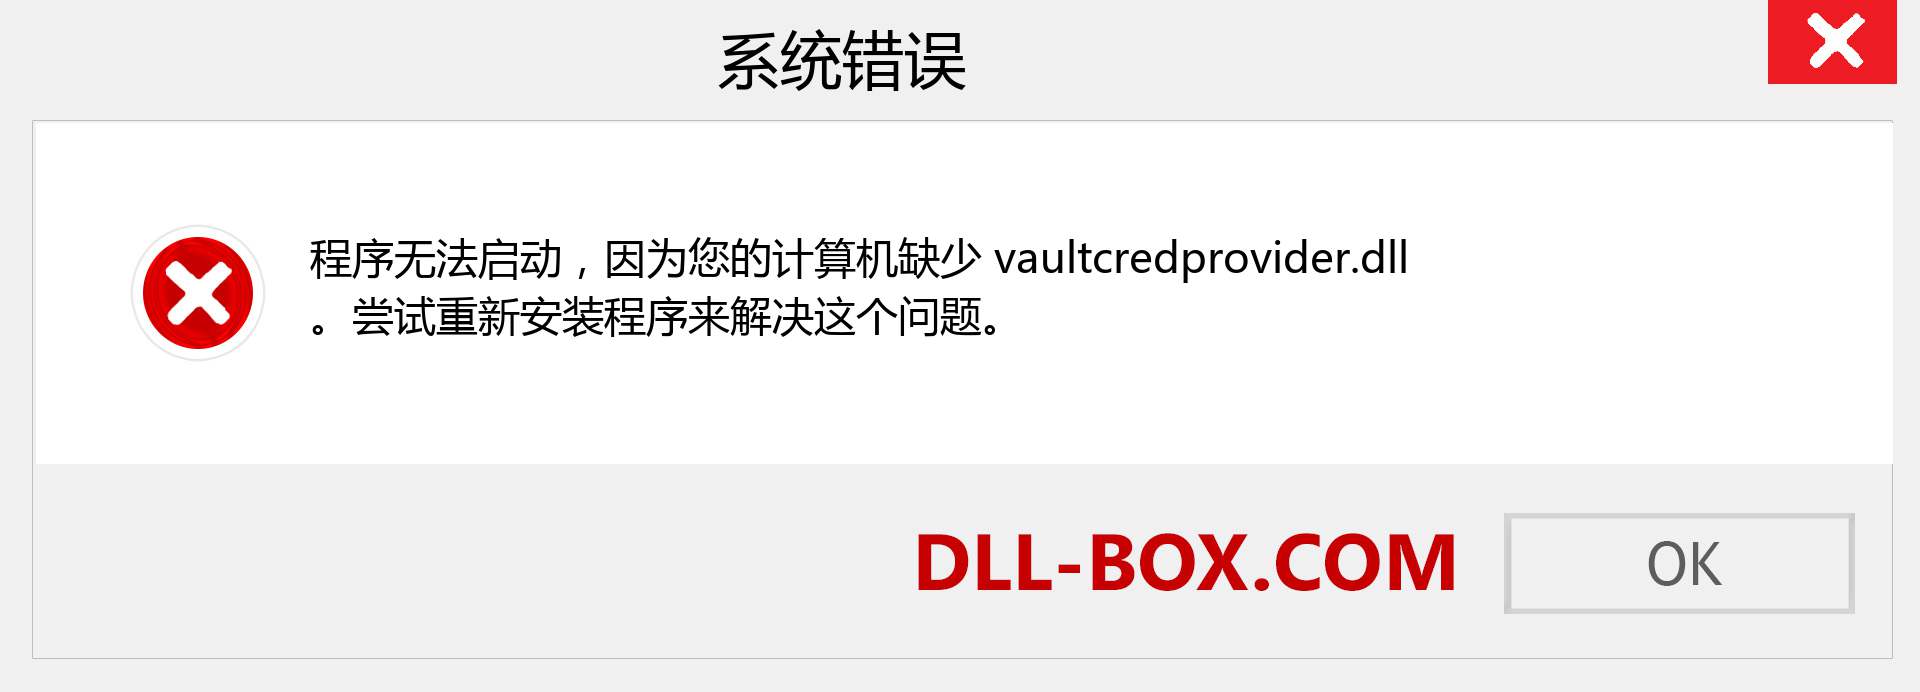 vaultcredprovider.dll 文件丢失？。 适用于 Windows 7、8、10 的下载 - 修复 Windows、照片、图像上的 vaultcredprovider dll 丢失错误